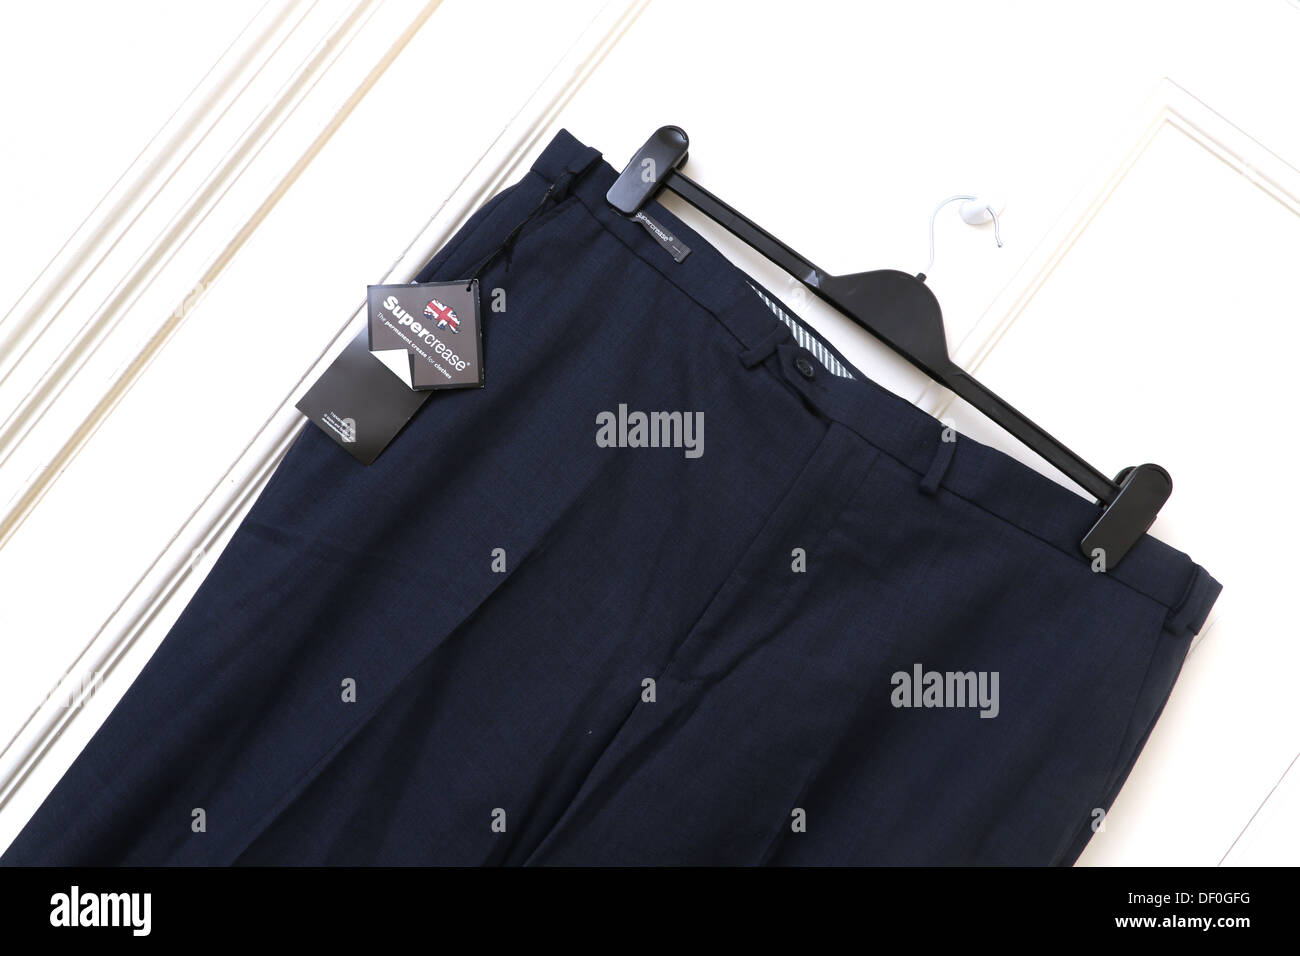 Supercrease piega permanente per i vestiti etichetta sul blu navy pantaloni Foto Stock